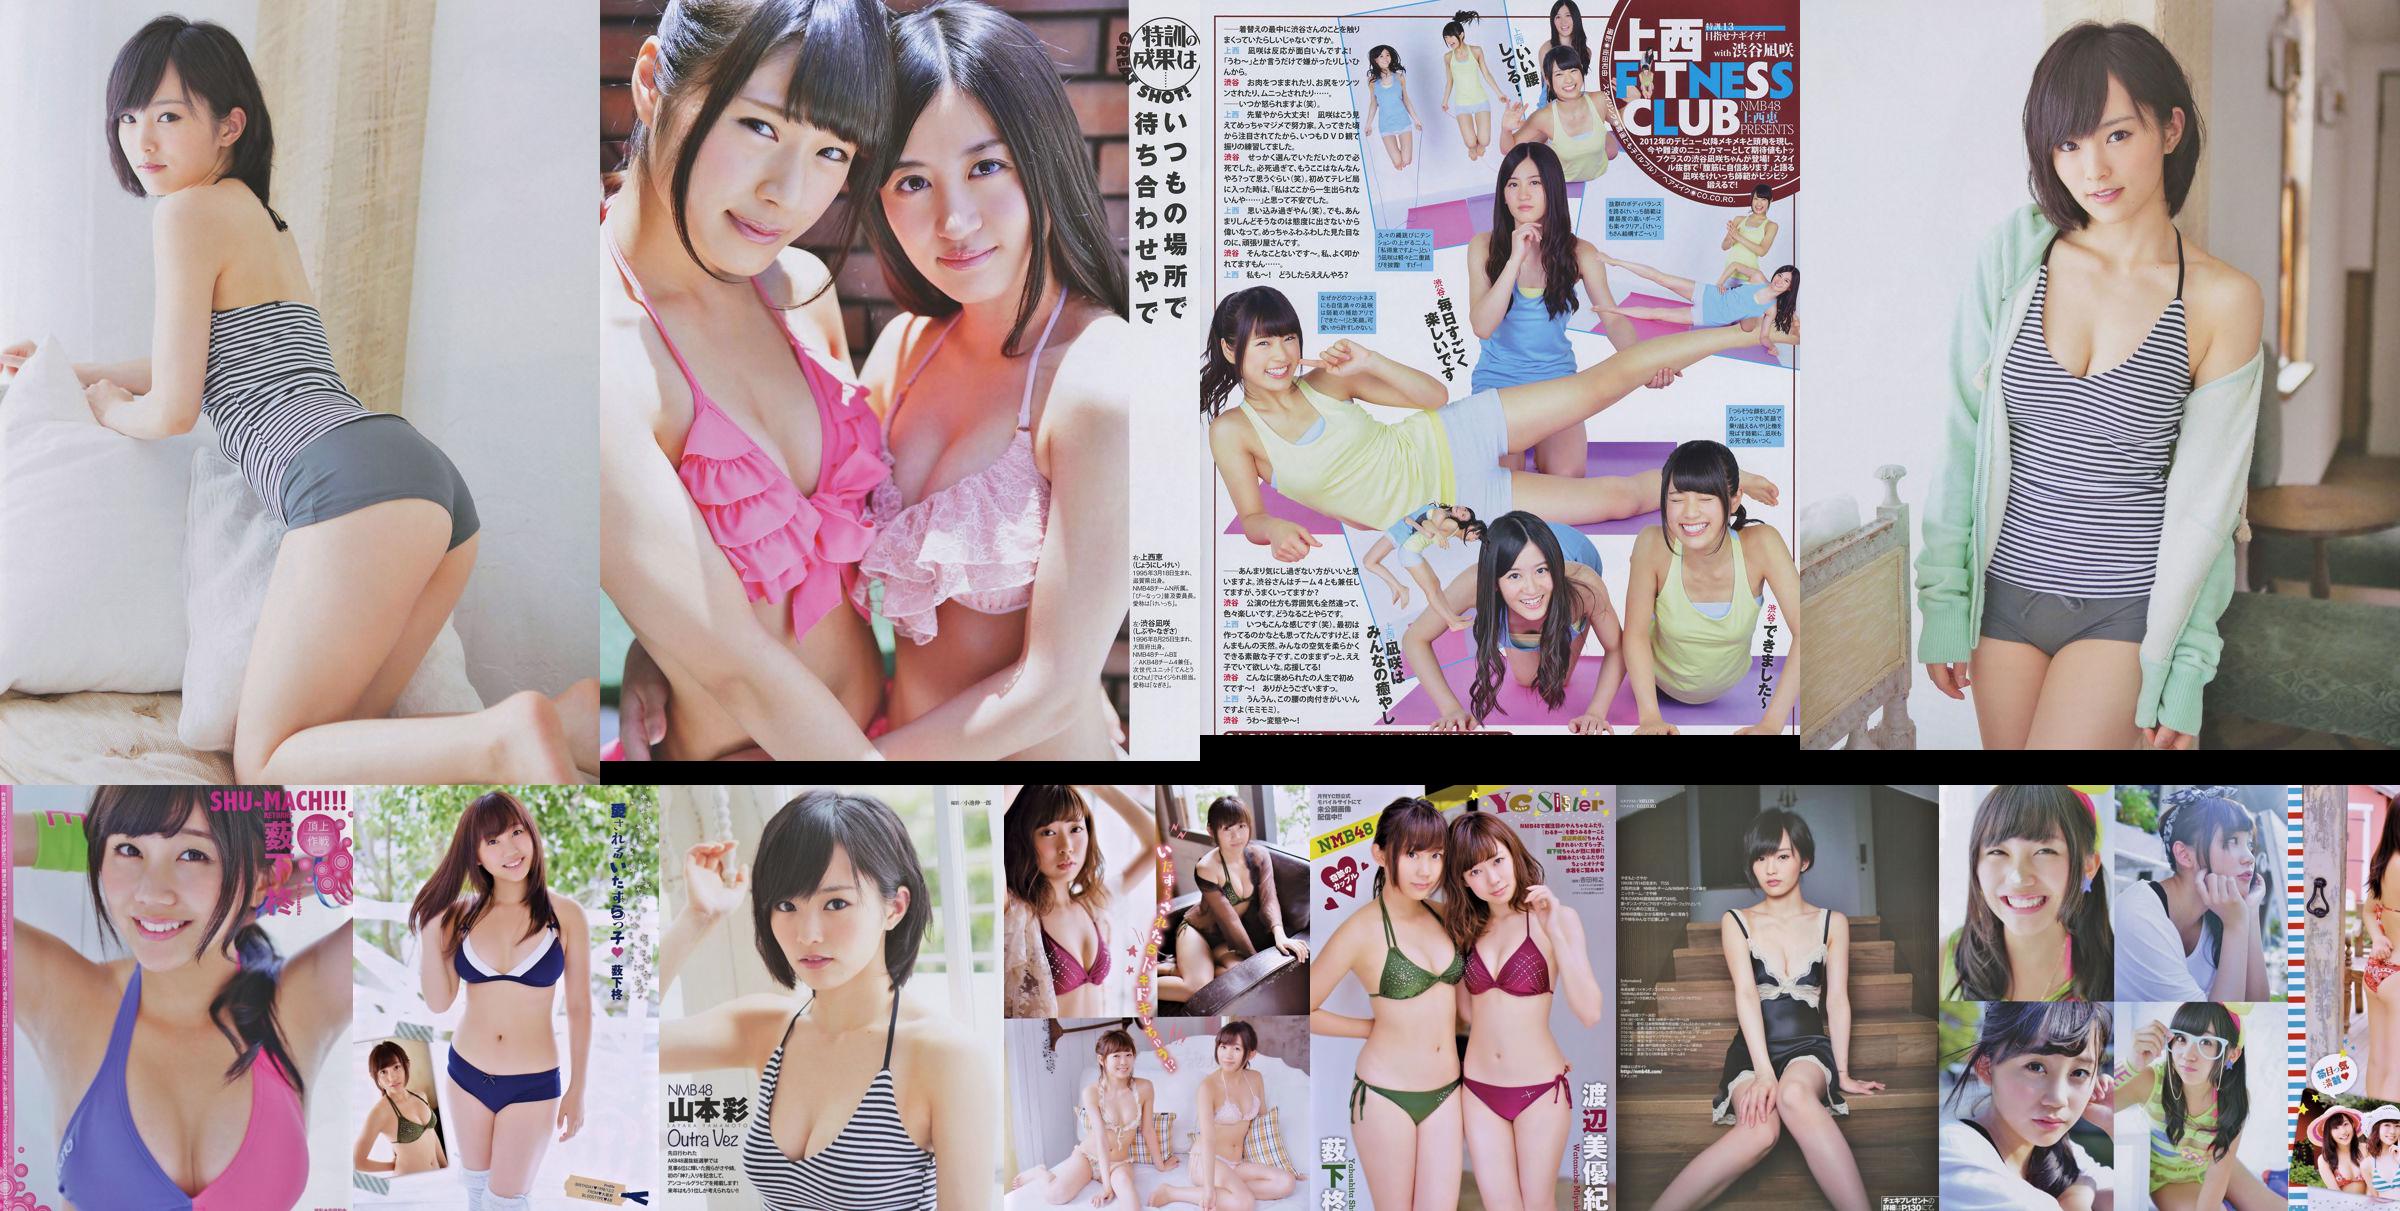 [Joven Campeona Retsu] Shu Yabushita Miyuki Watanabe 2014 No.10 Fotografía No.35fef8 Página 1